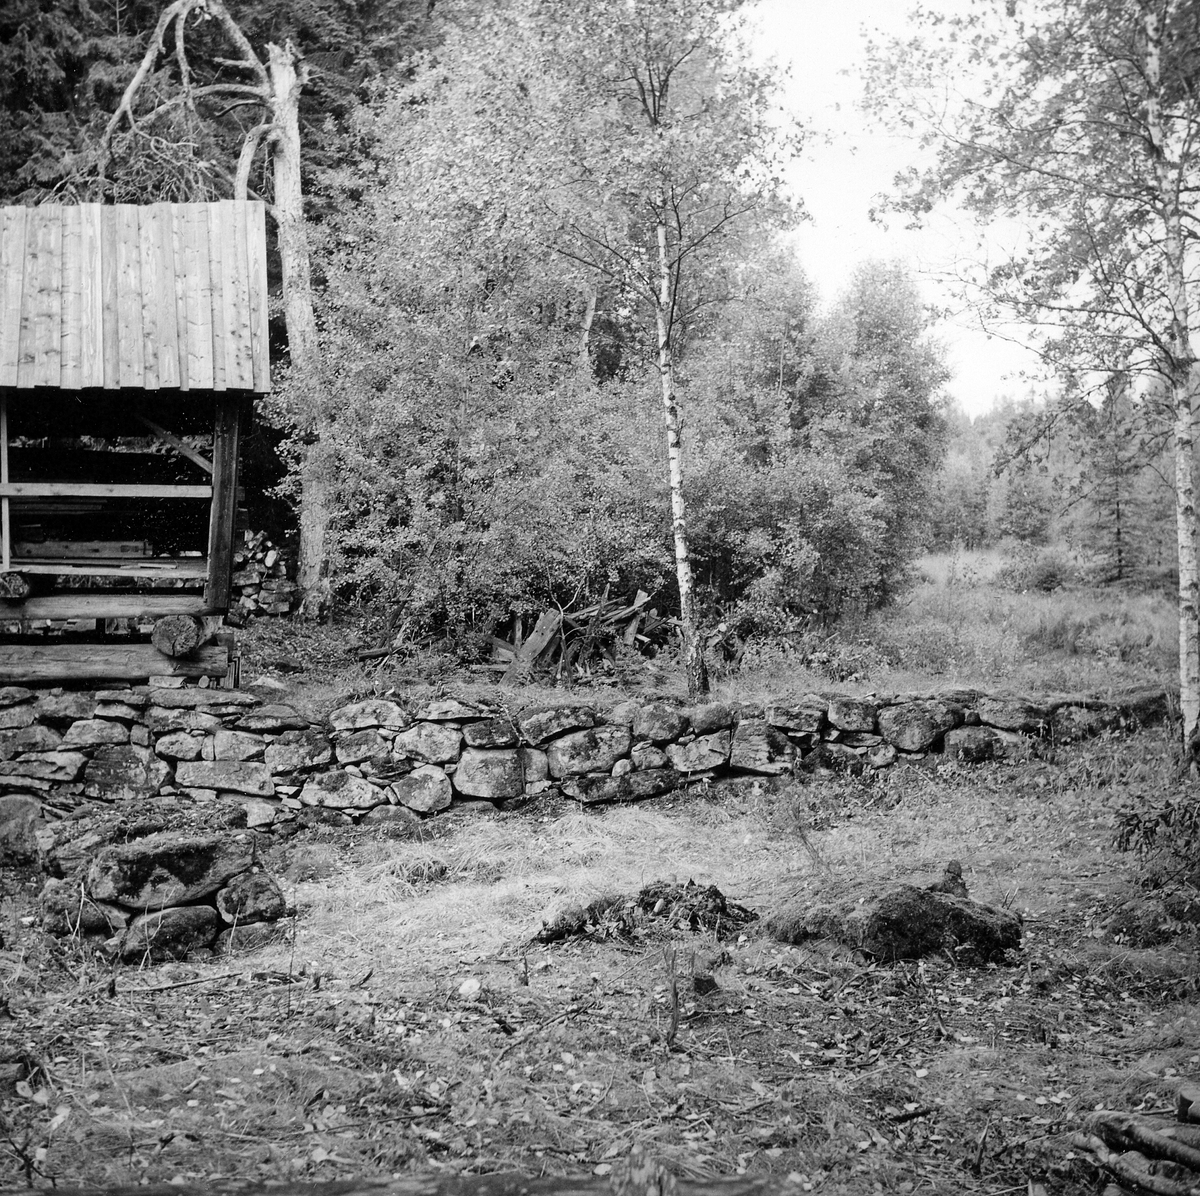 Södra Unnaryds sn. Brunnsbacka Kvarn och såg efter restaurering och markvård, 1976.